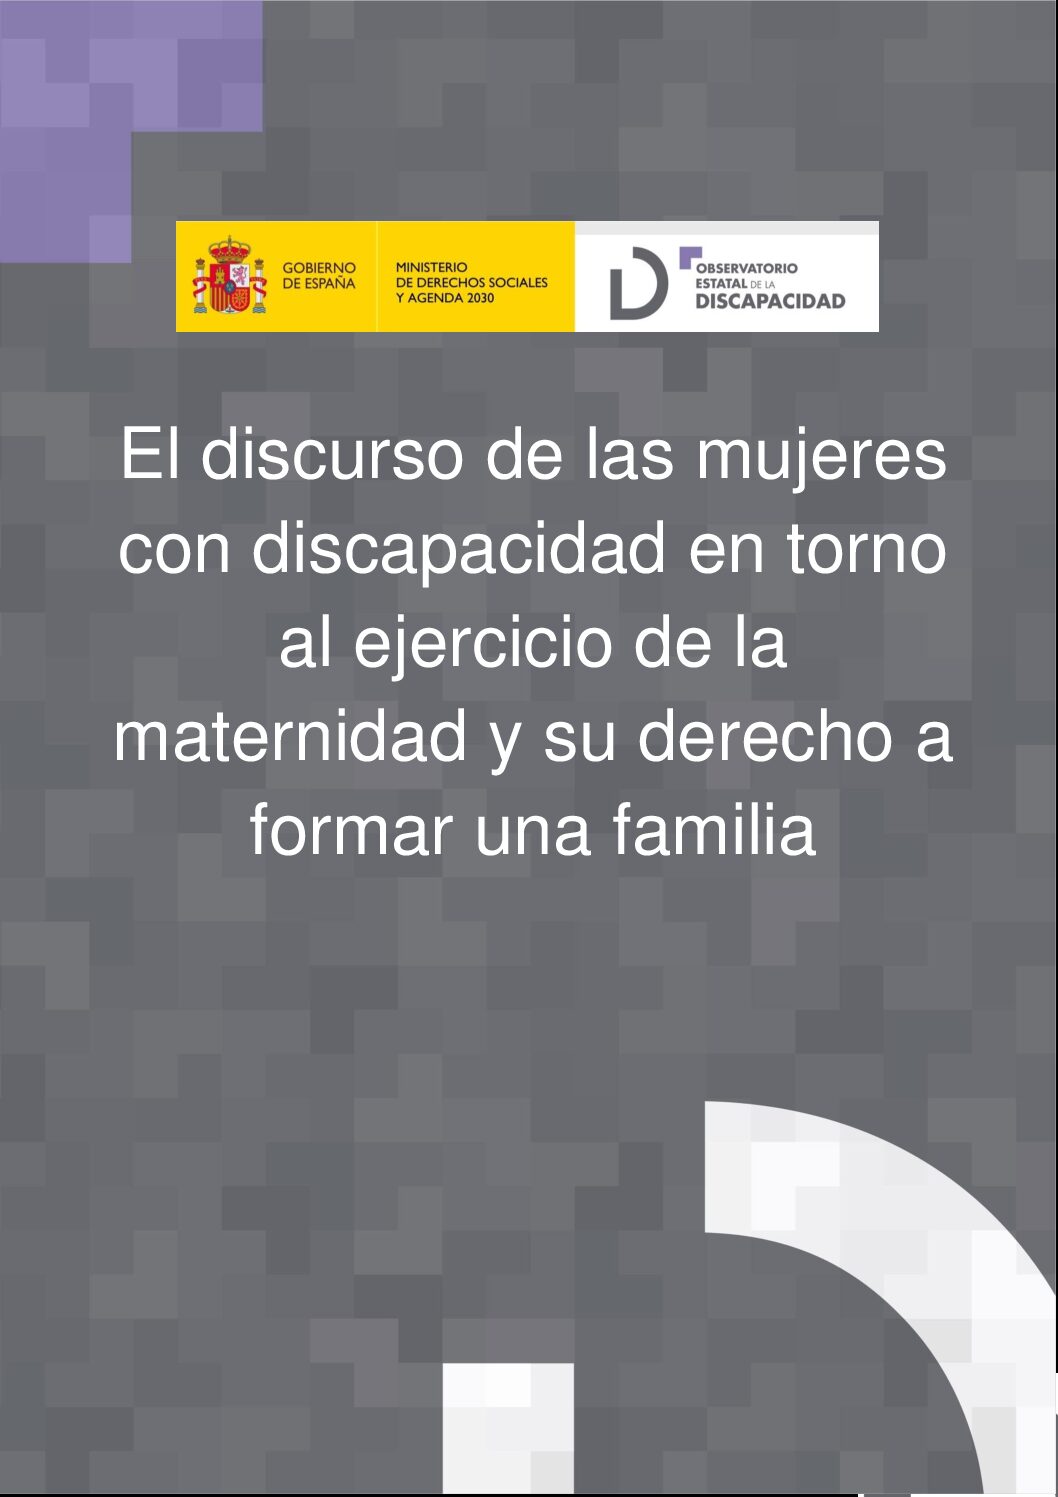 El discurso de las mujeres con discapacidad en torno al ejercicio de la maternidad y su derecho a formar una familia